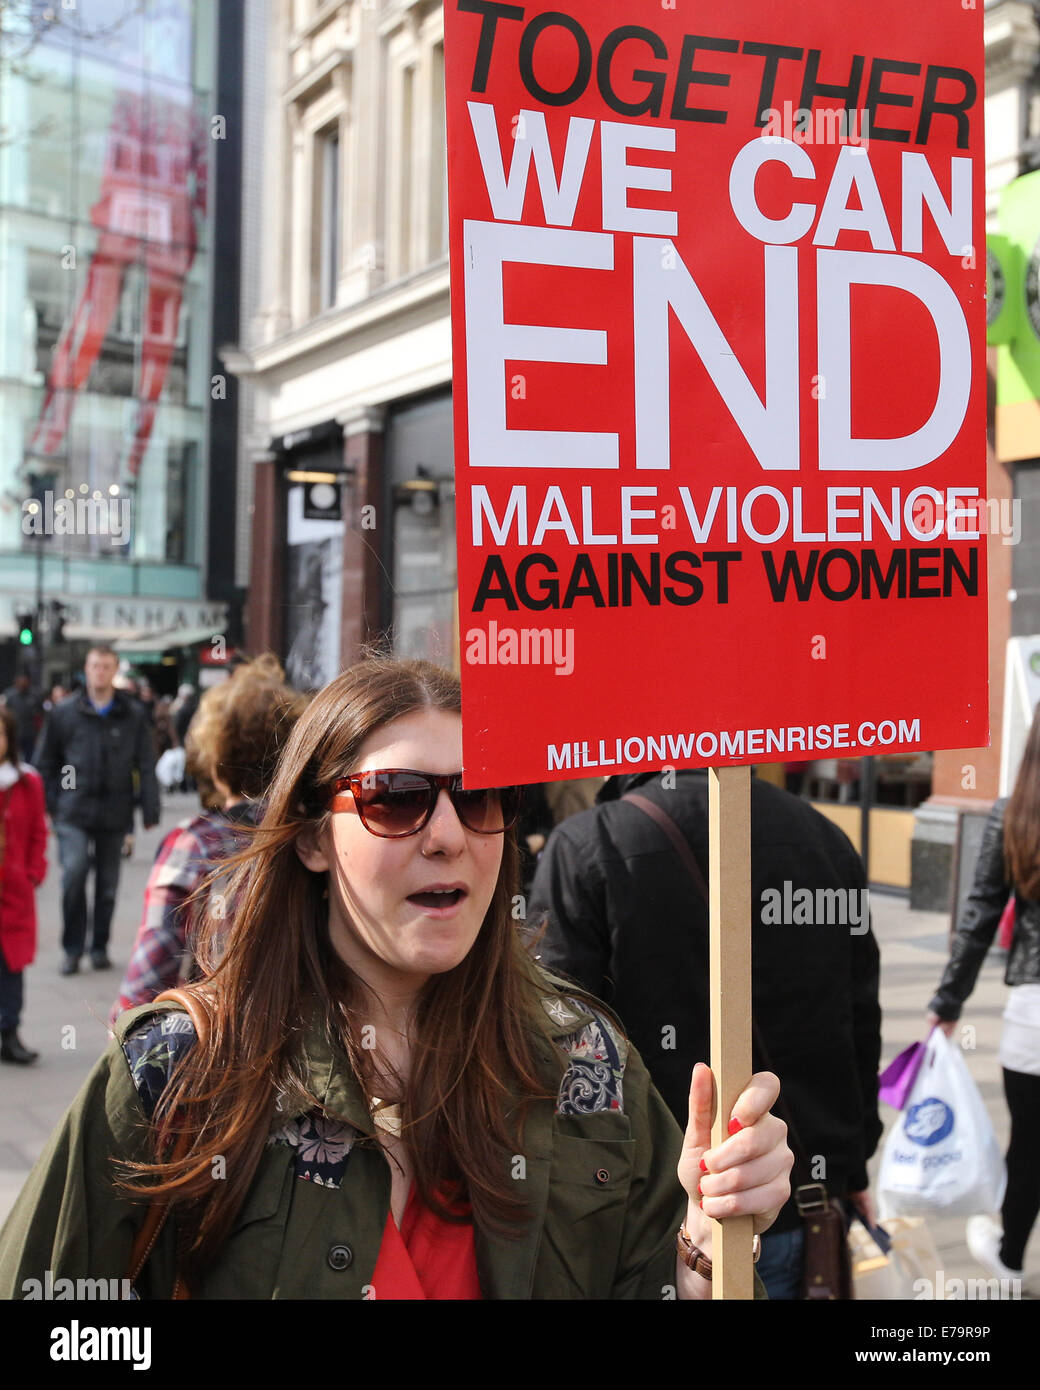 Millions de femmes Lieu mars à Londres pour marquer la Journée internationale de la femme où : London, Royaume-Uni Quand : 08 Mars 2014 Banque D'Images